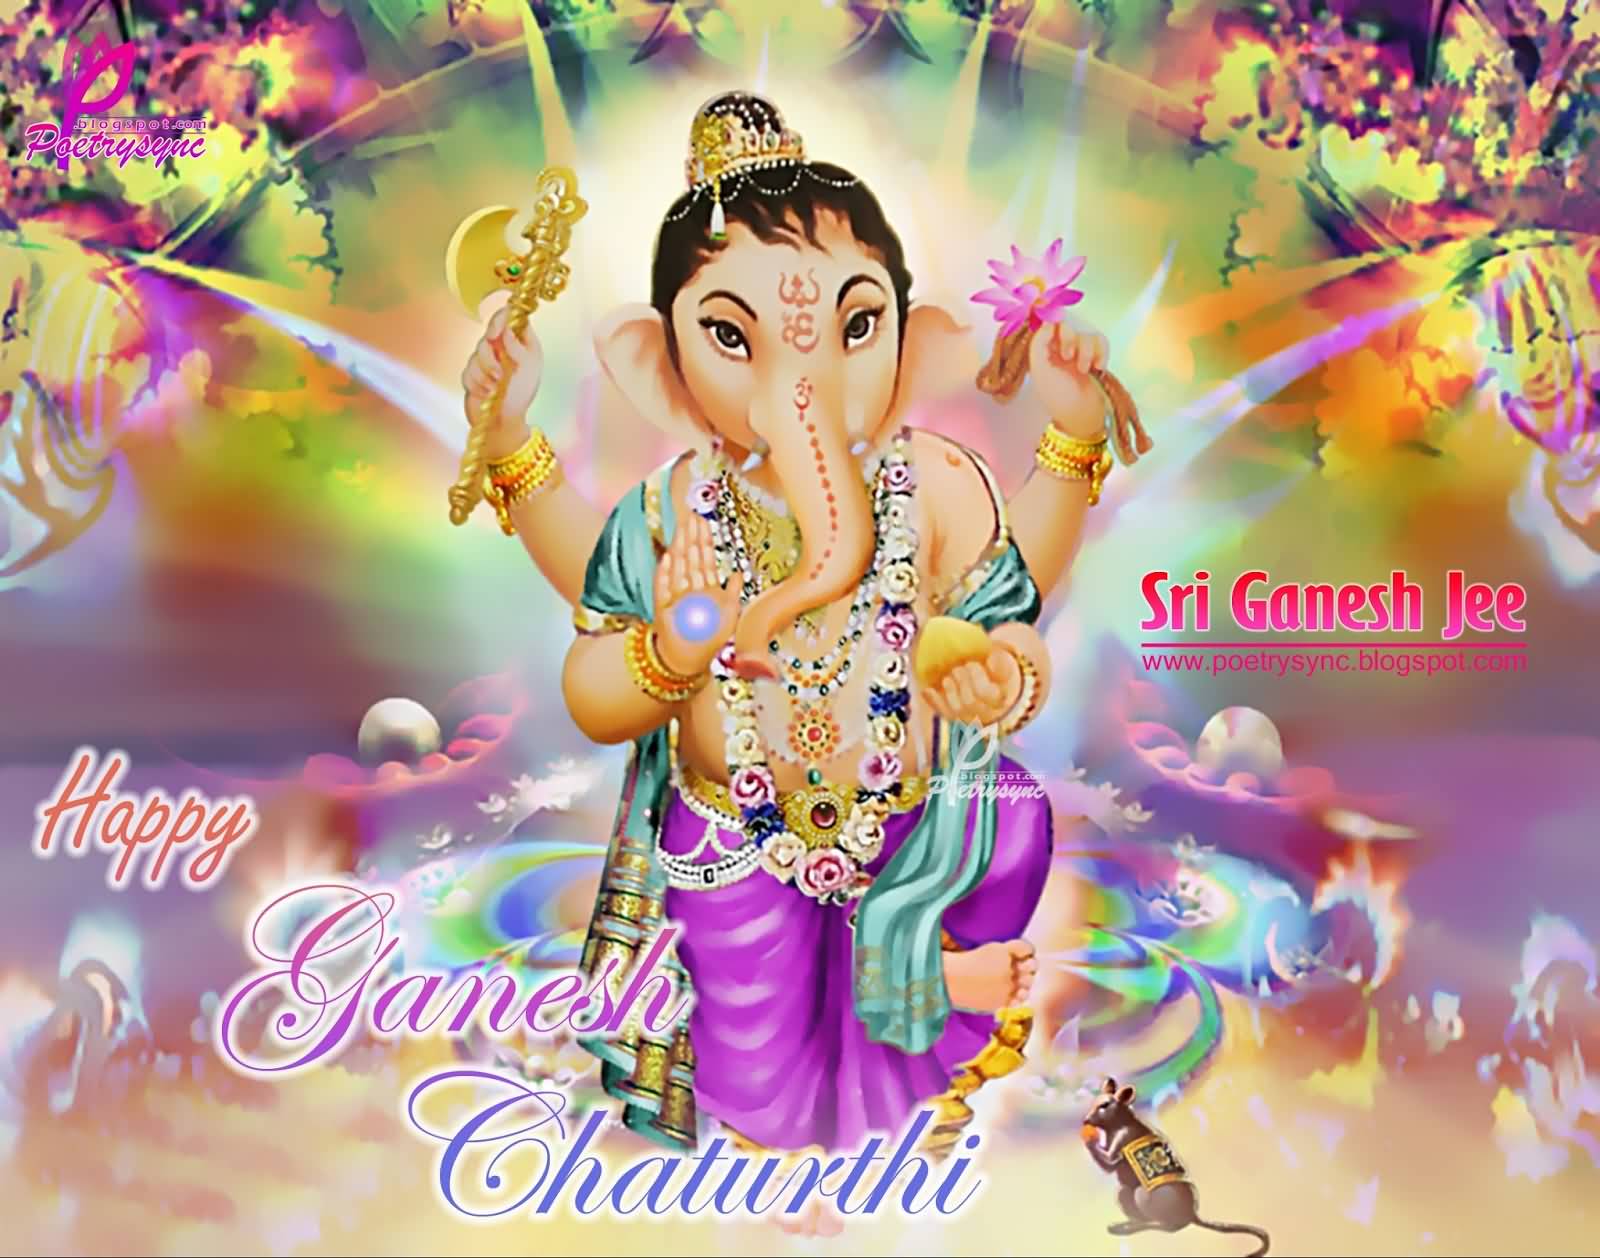 Happy Ganesh Chaturthi 2016 Wishes Image